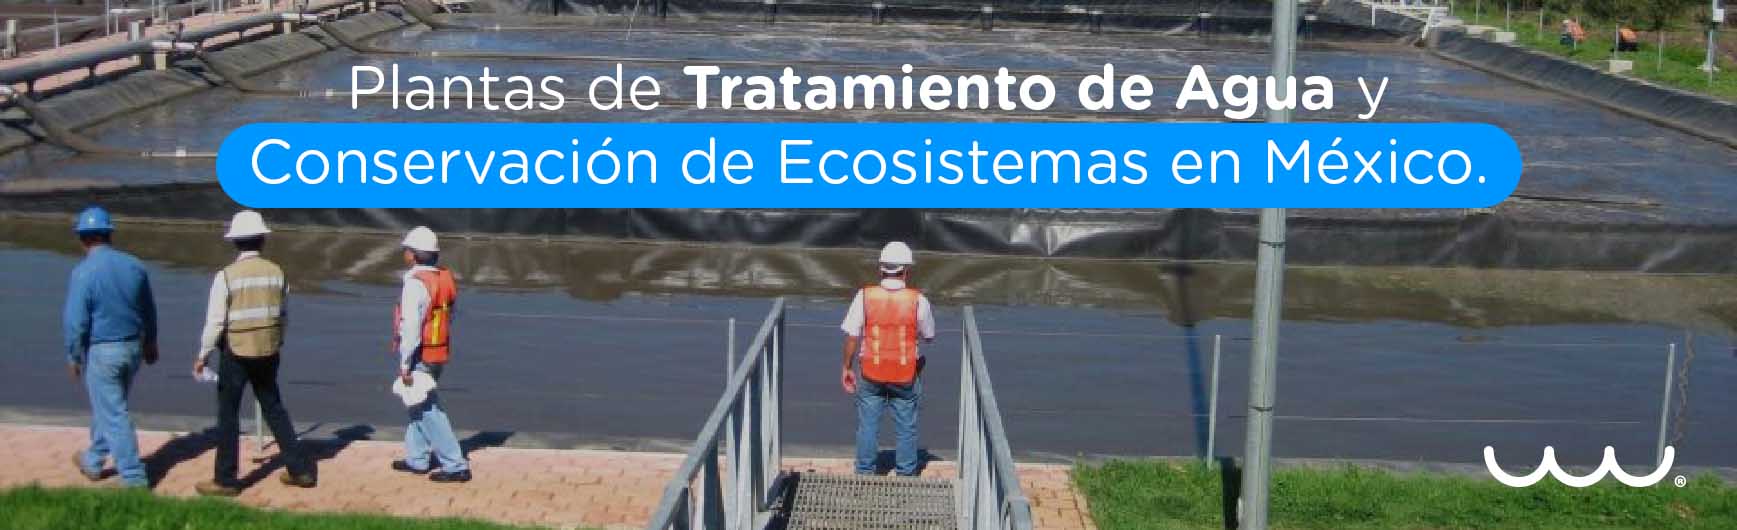 Plantas de Tratamiento de Agua y Conservación de Ecosistemas en México.